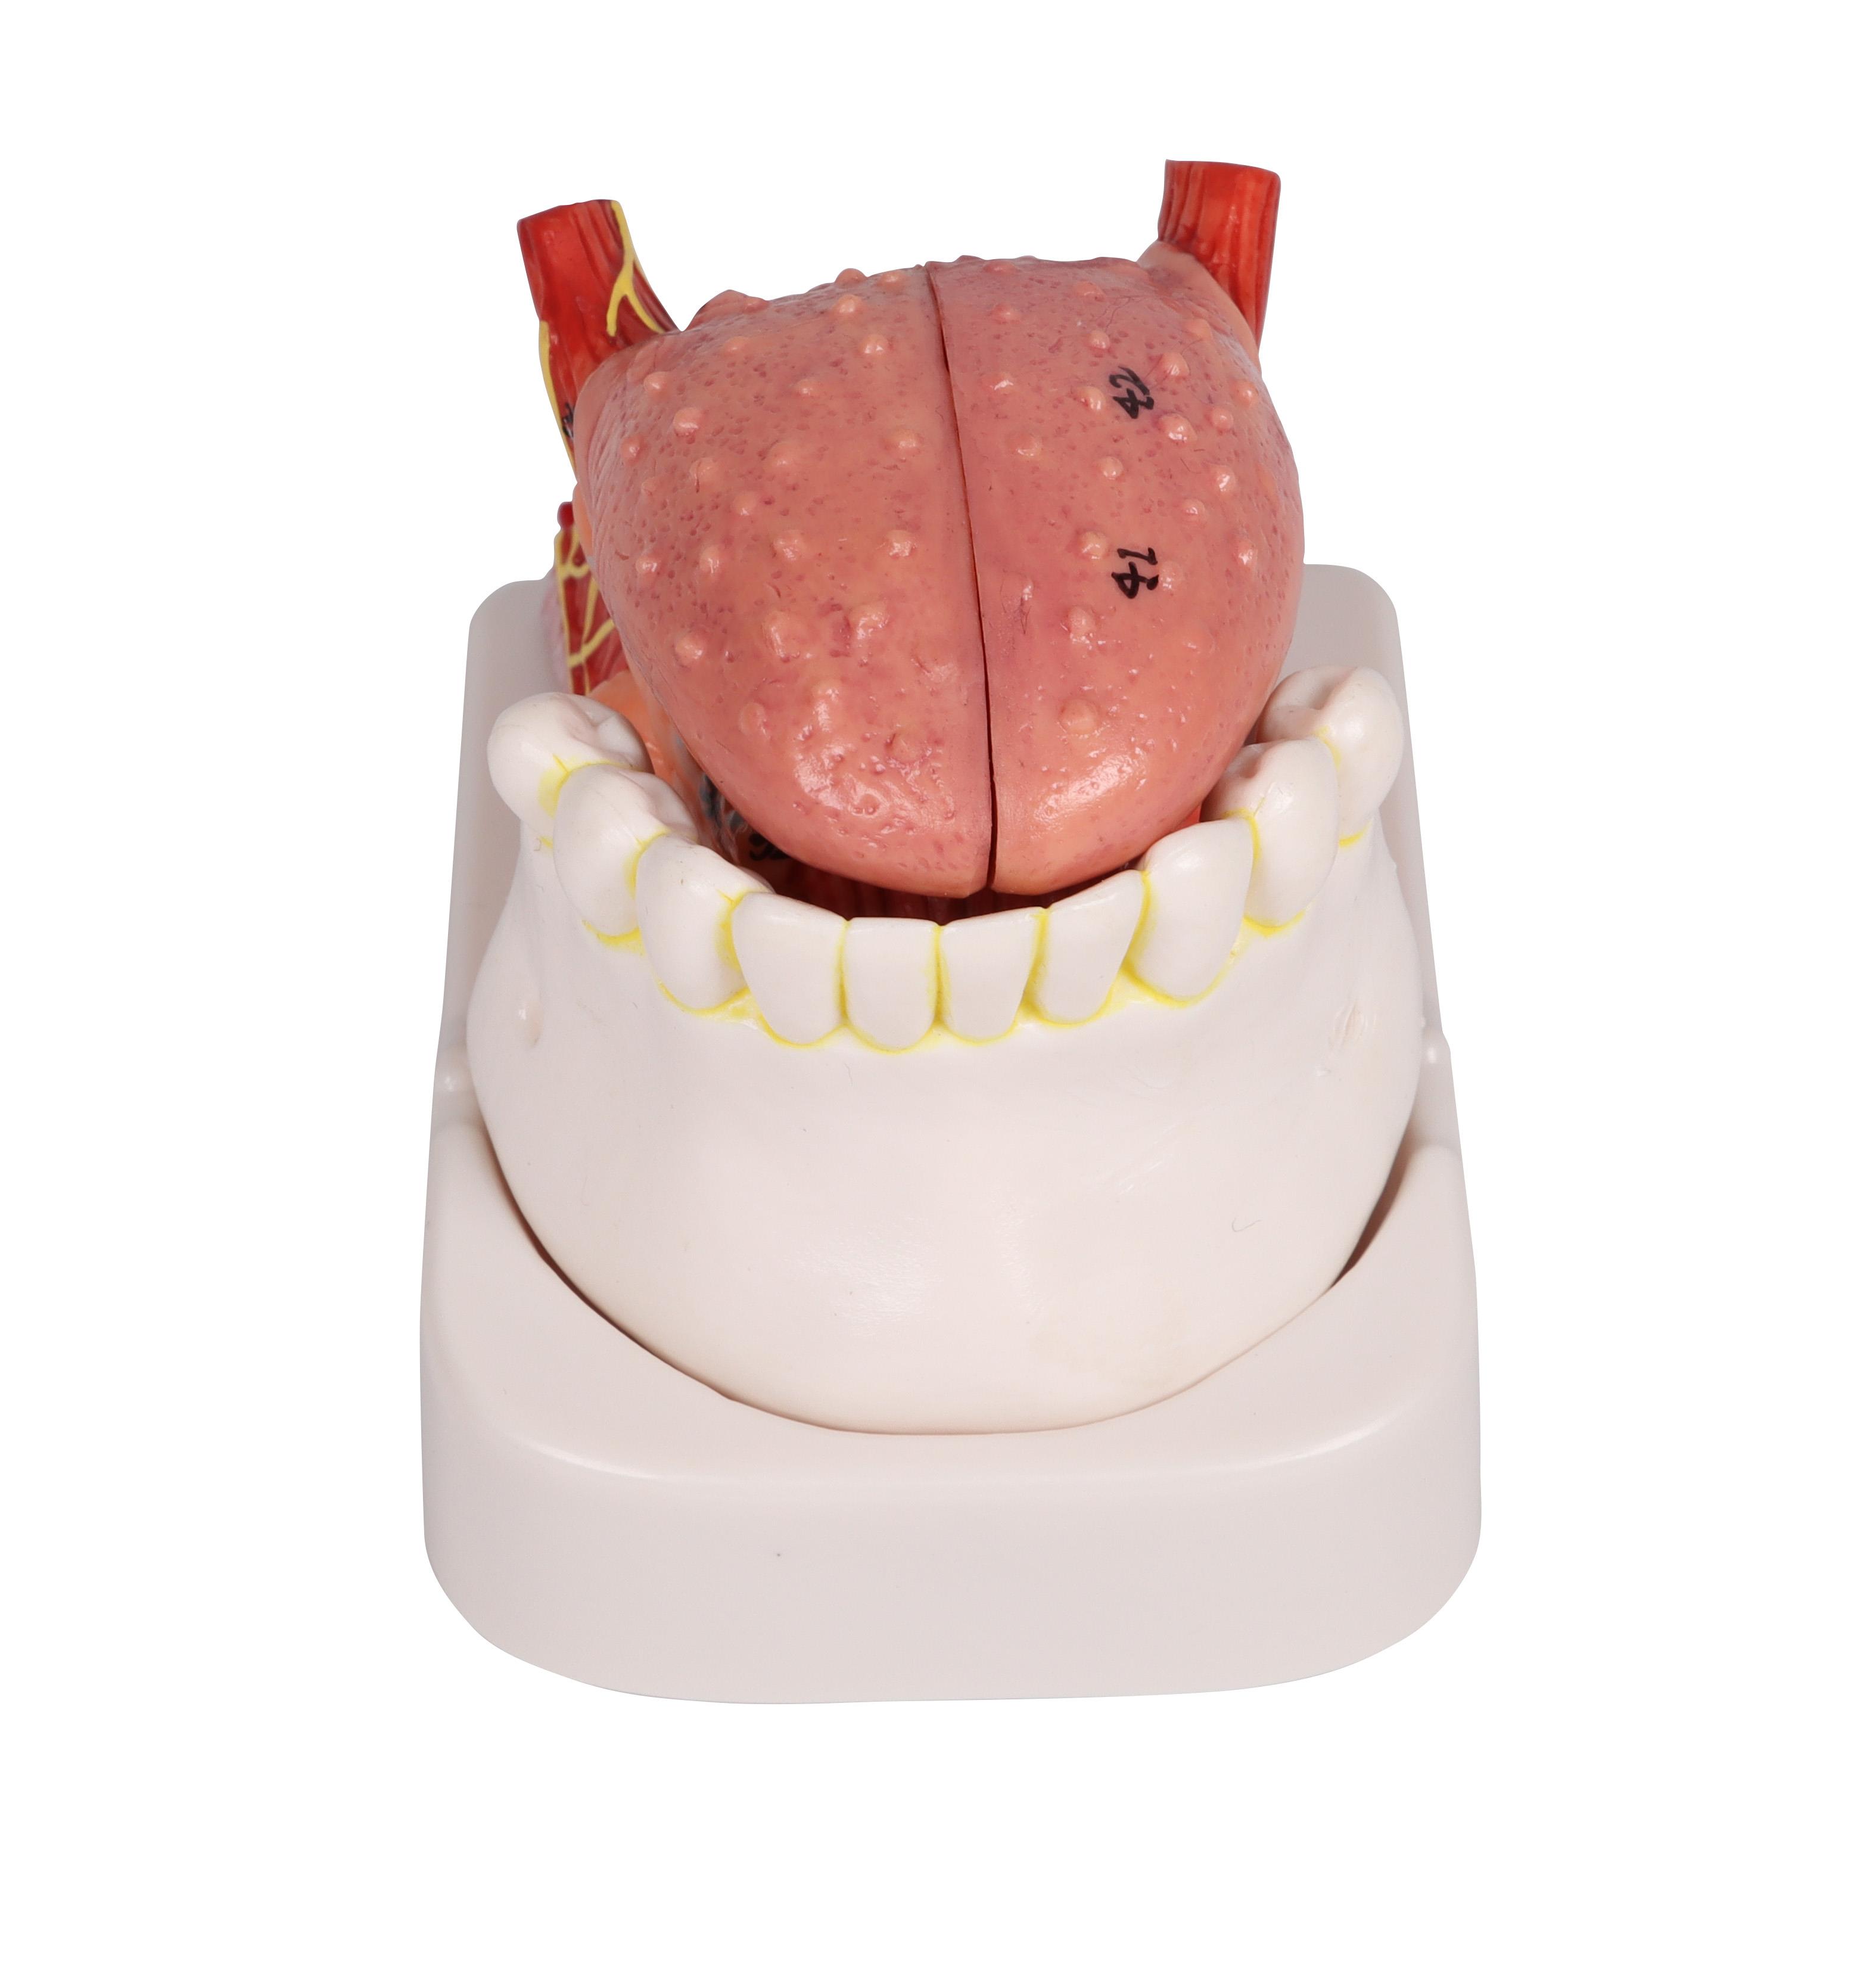 Zungen-und-Zahnmodell-lebensgroß-4-teilig-1